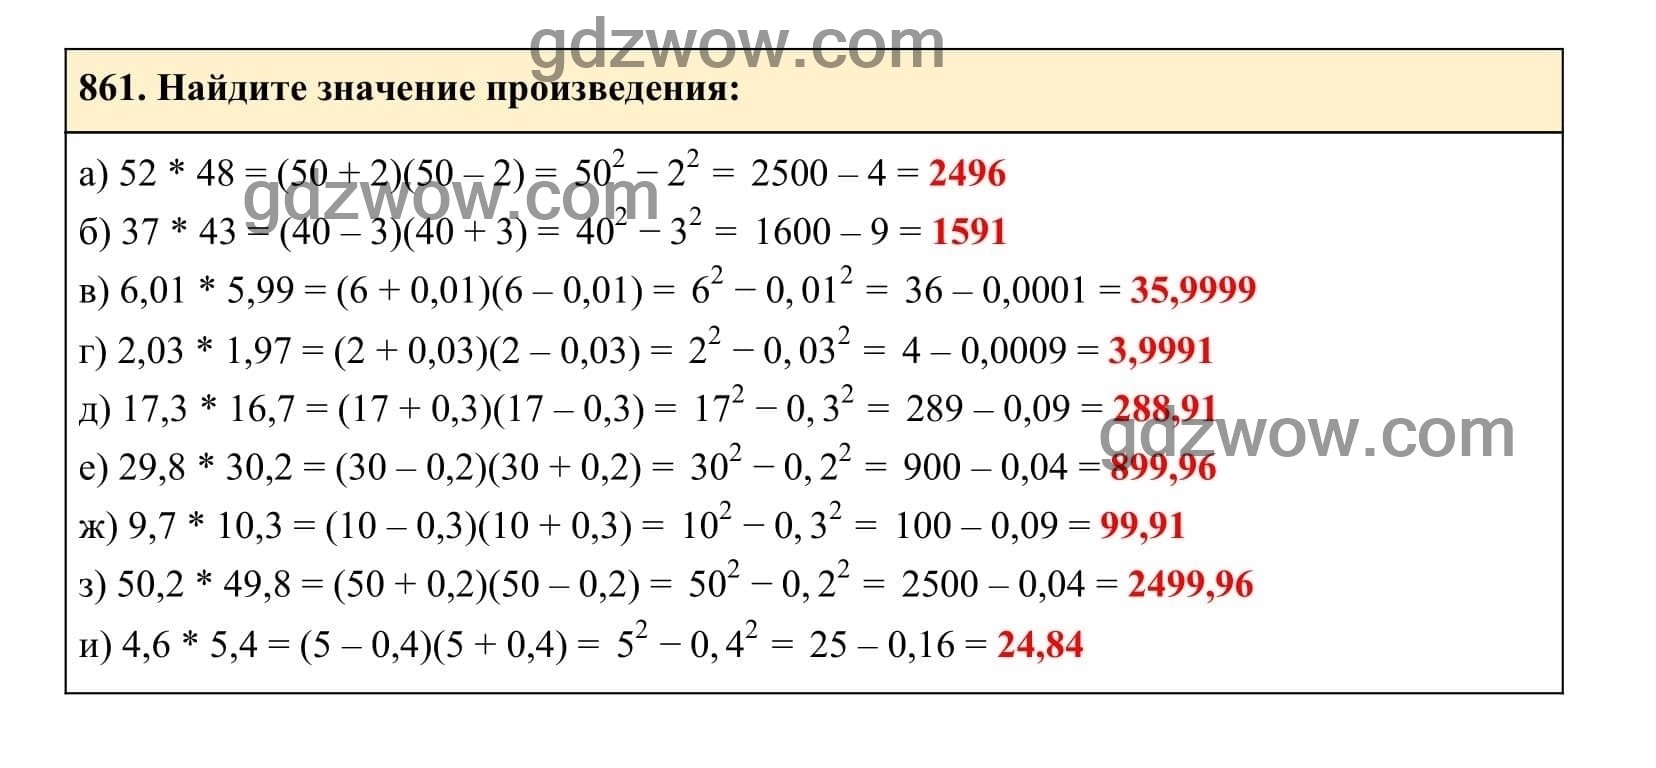 Упражнение 861 - ГДЗ по Алгебре 7 класс Учебник Макарычев (решебник) - GDZwow